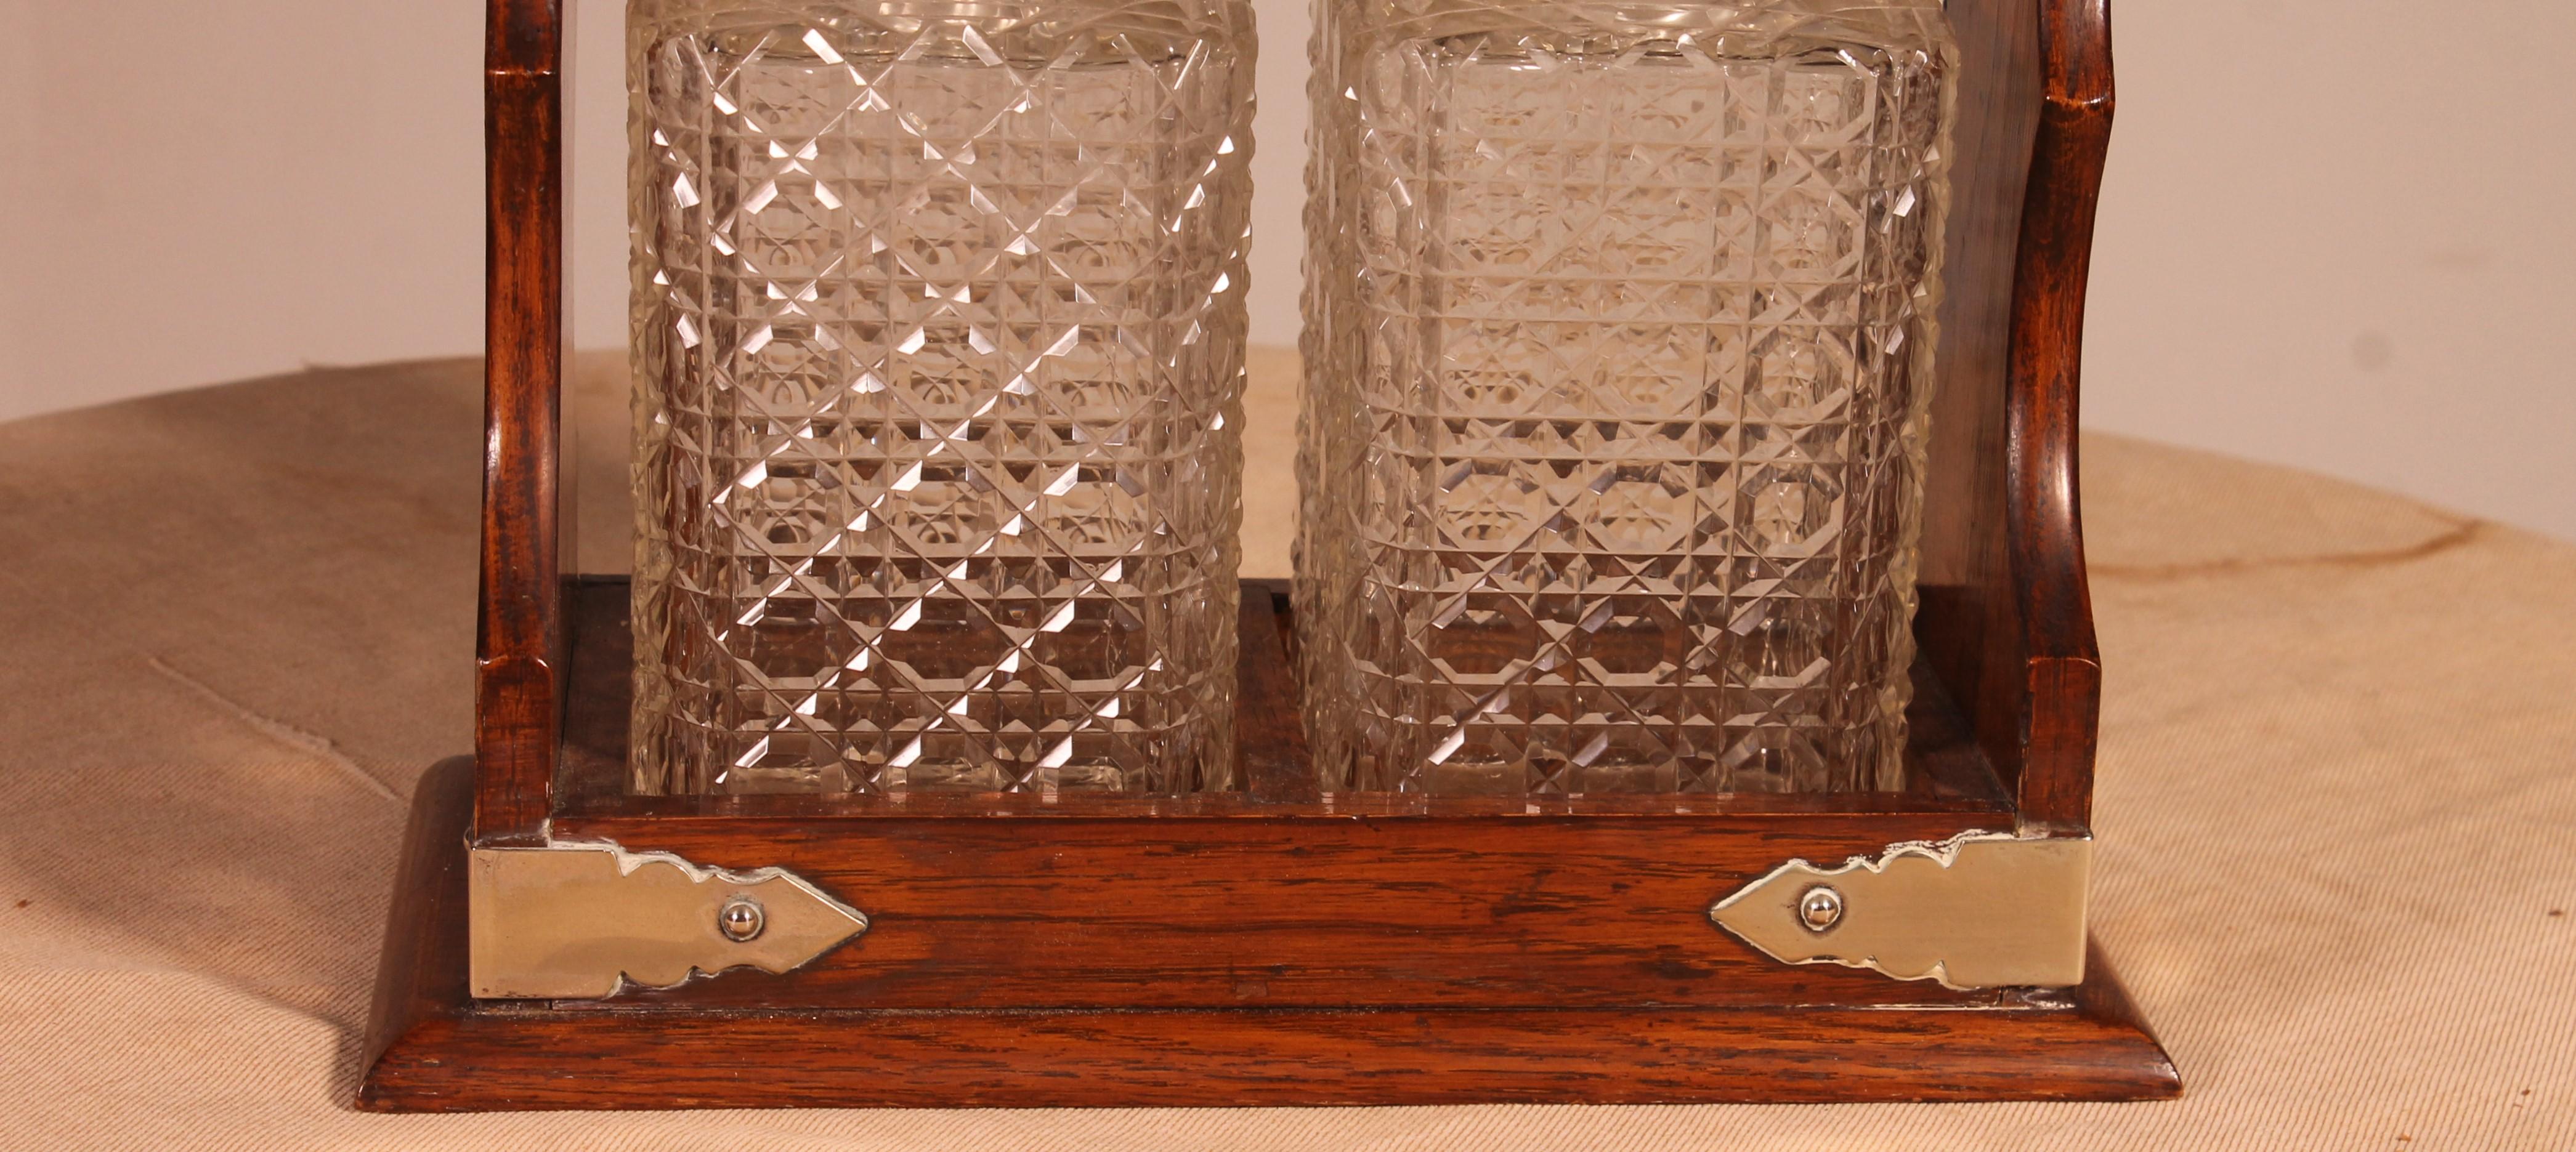 Whiskey-Keller aus dem 19. Jahrhundert, Tantalus genannt, bestehend aus zwei quadratischen Kristallflaschen mit ihren Verschlüssen

die Glaswaren sind in gutem Zustand, das Schloss funktioniert einwandfrei

Sehr dekoratives Objekt, das auch